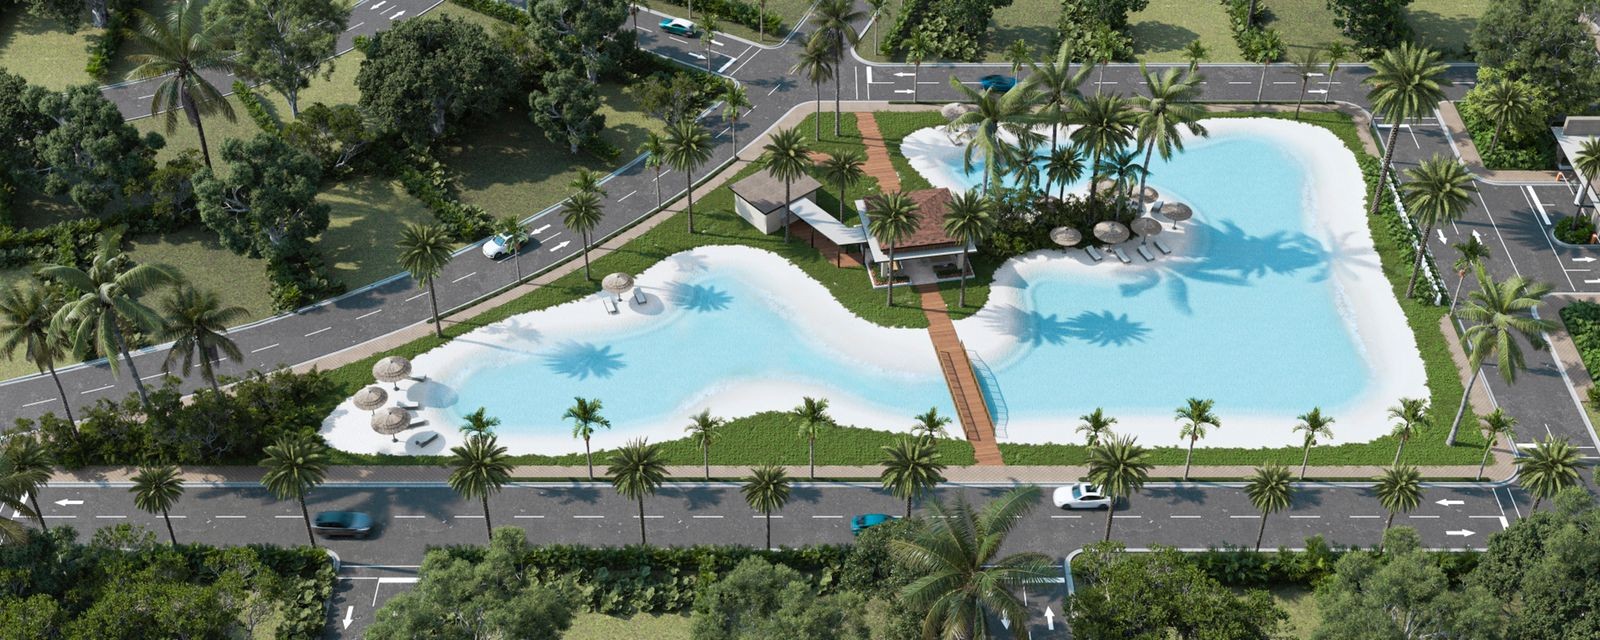 casas - Nueva Disponibilidad de villa en Bávaro Punta cana,  con piscina Incluida. 7